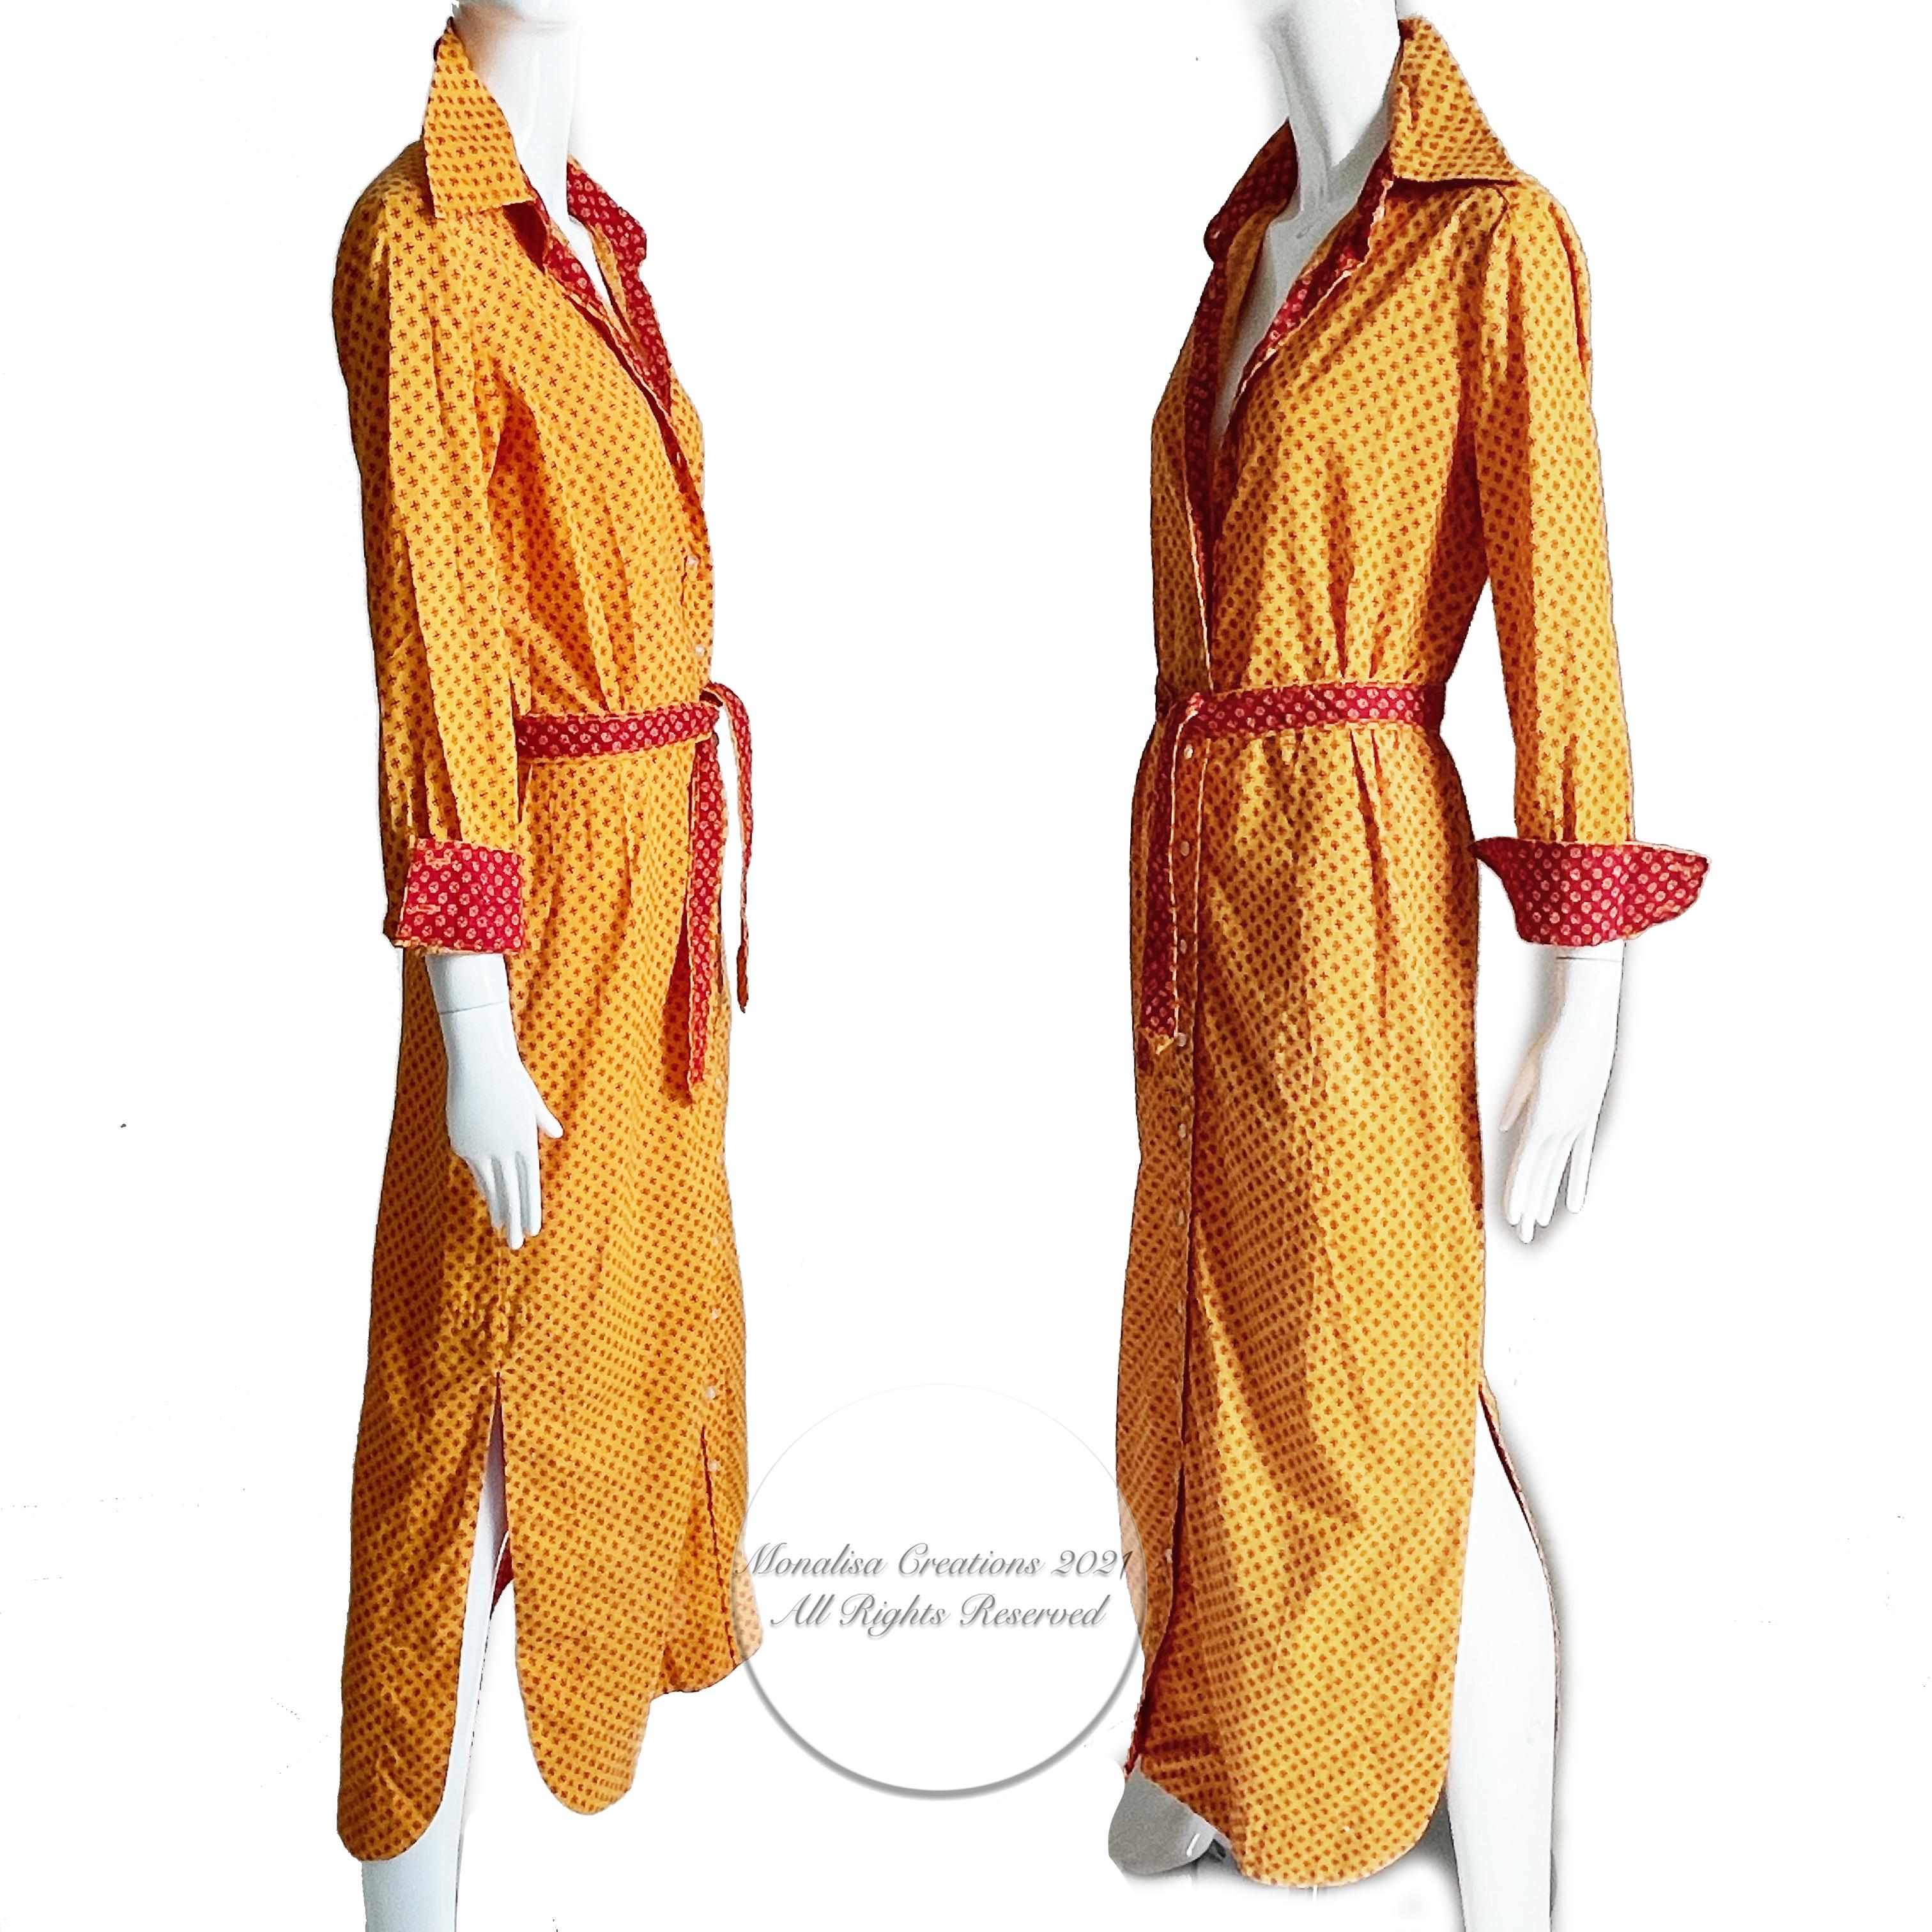 Geoffrey Beene Dress Button Front Cotton Shirtwaist + Belt Bold Daisy Print 70s 3